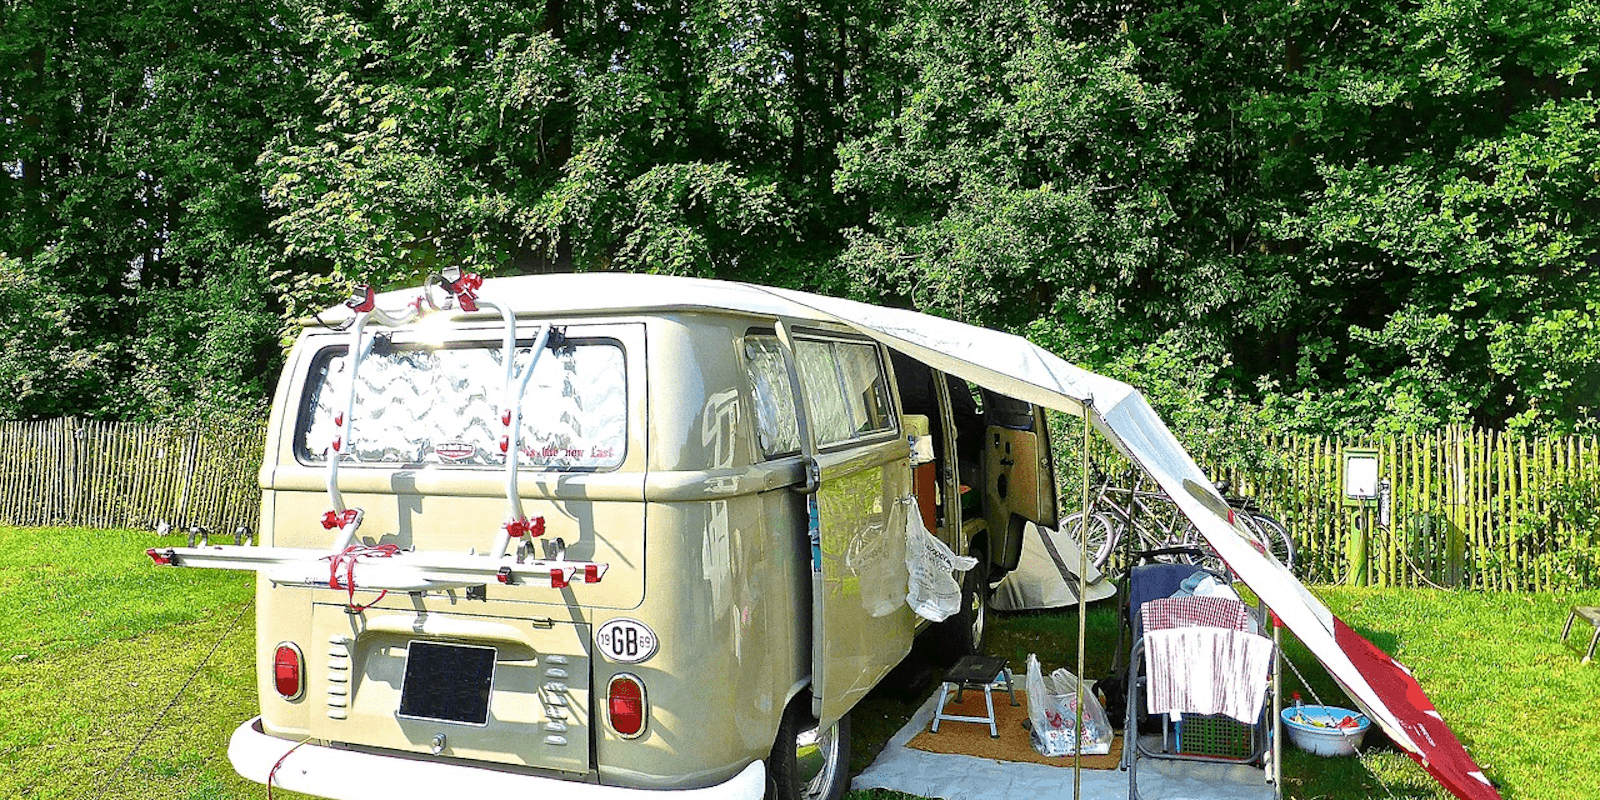 Die besten Campervans & Campingbusse